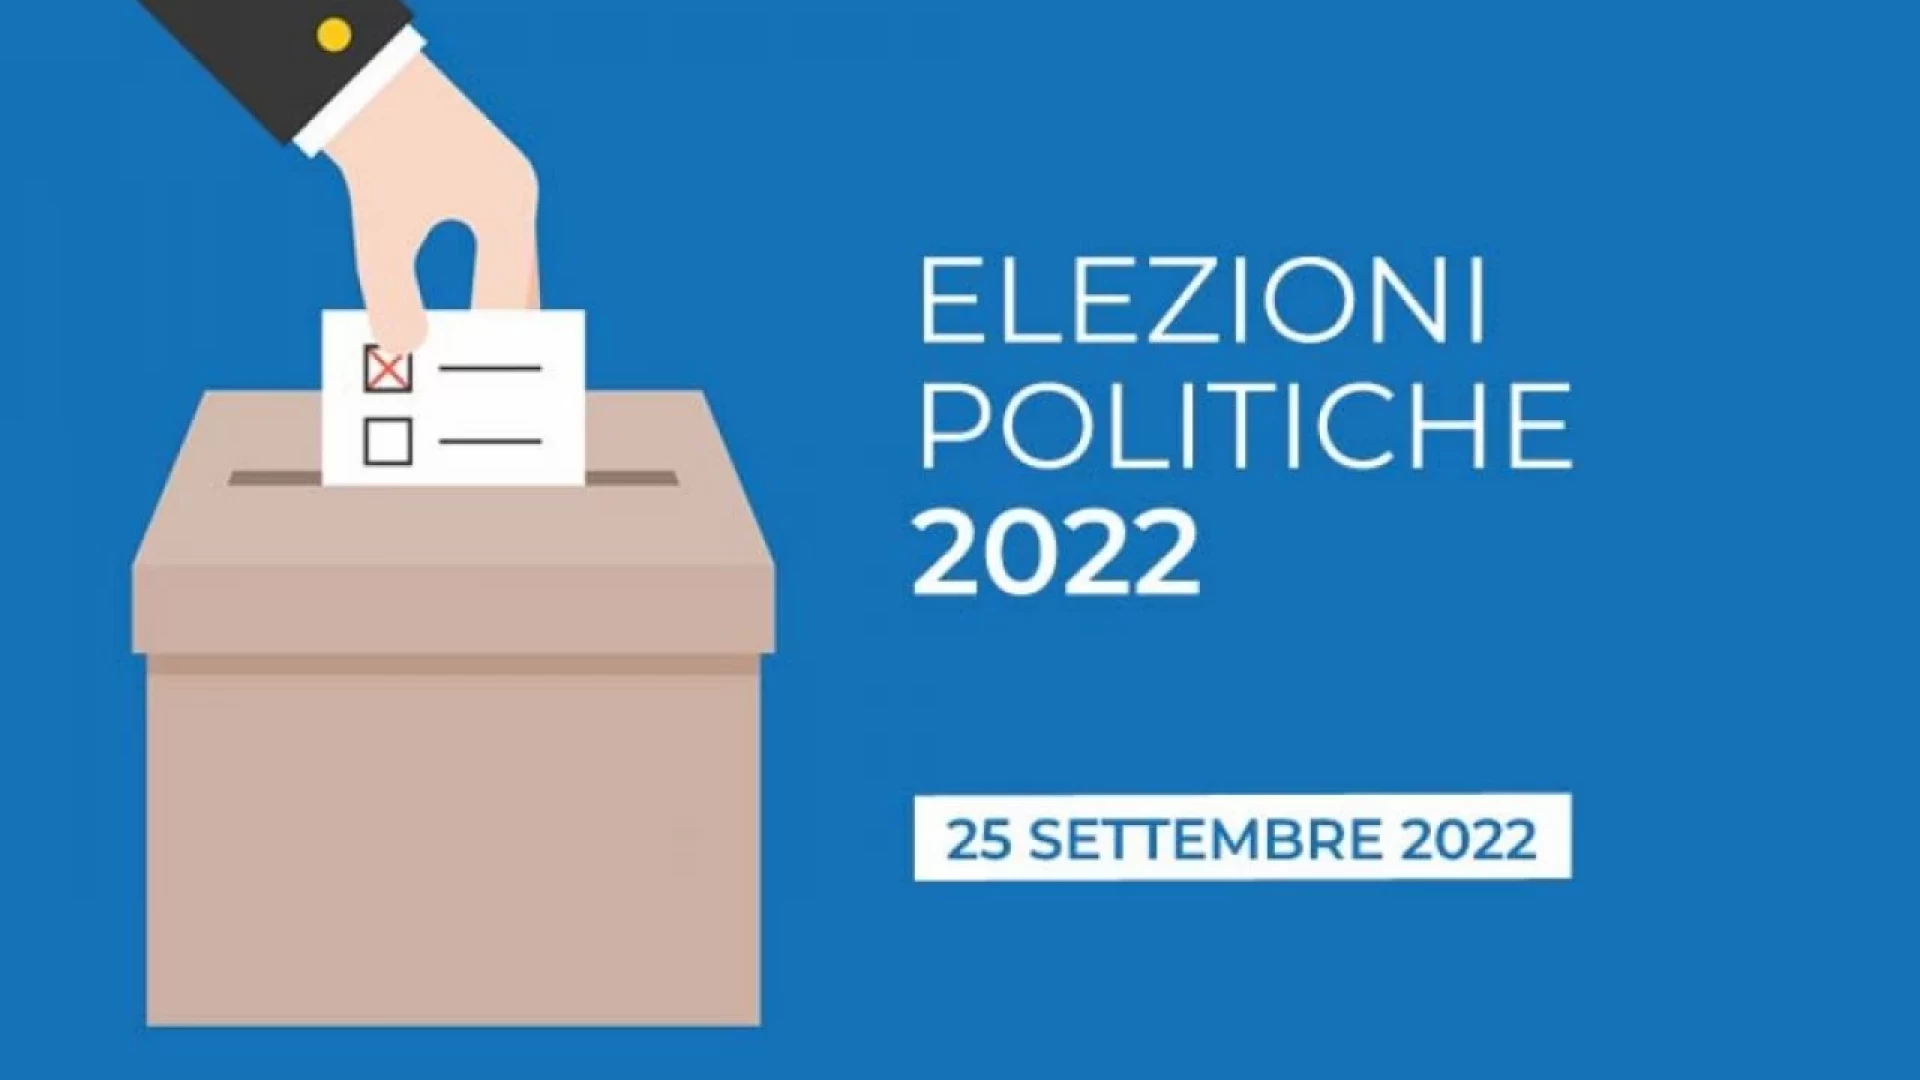 Politiche 2022, i dati dell'Affluenza in Molise alle ore 12